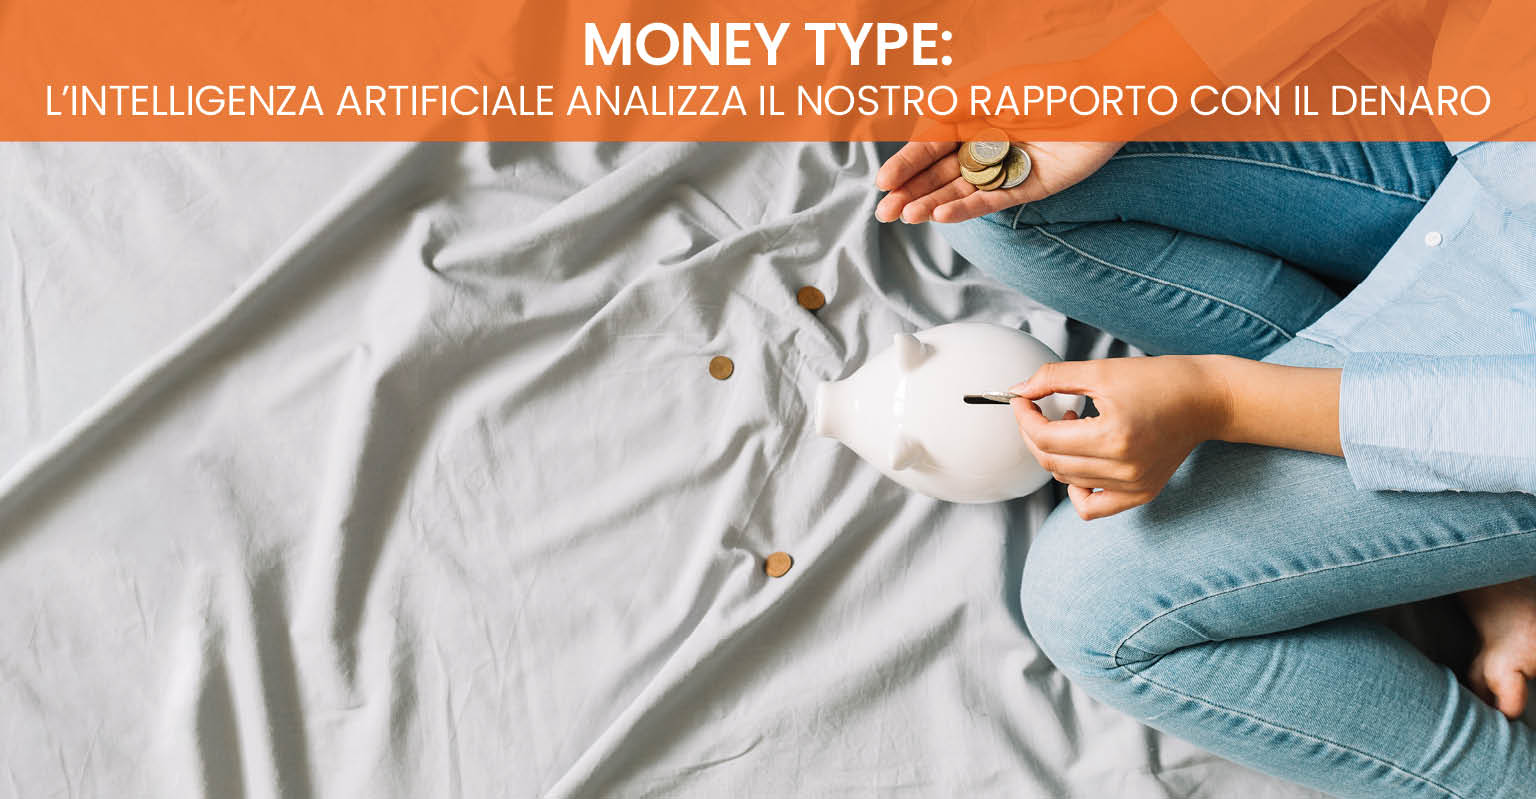 Money type: L’intelligenza artificiale analizza il nostro rapporto con il denaro